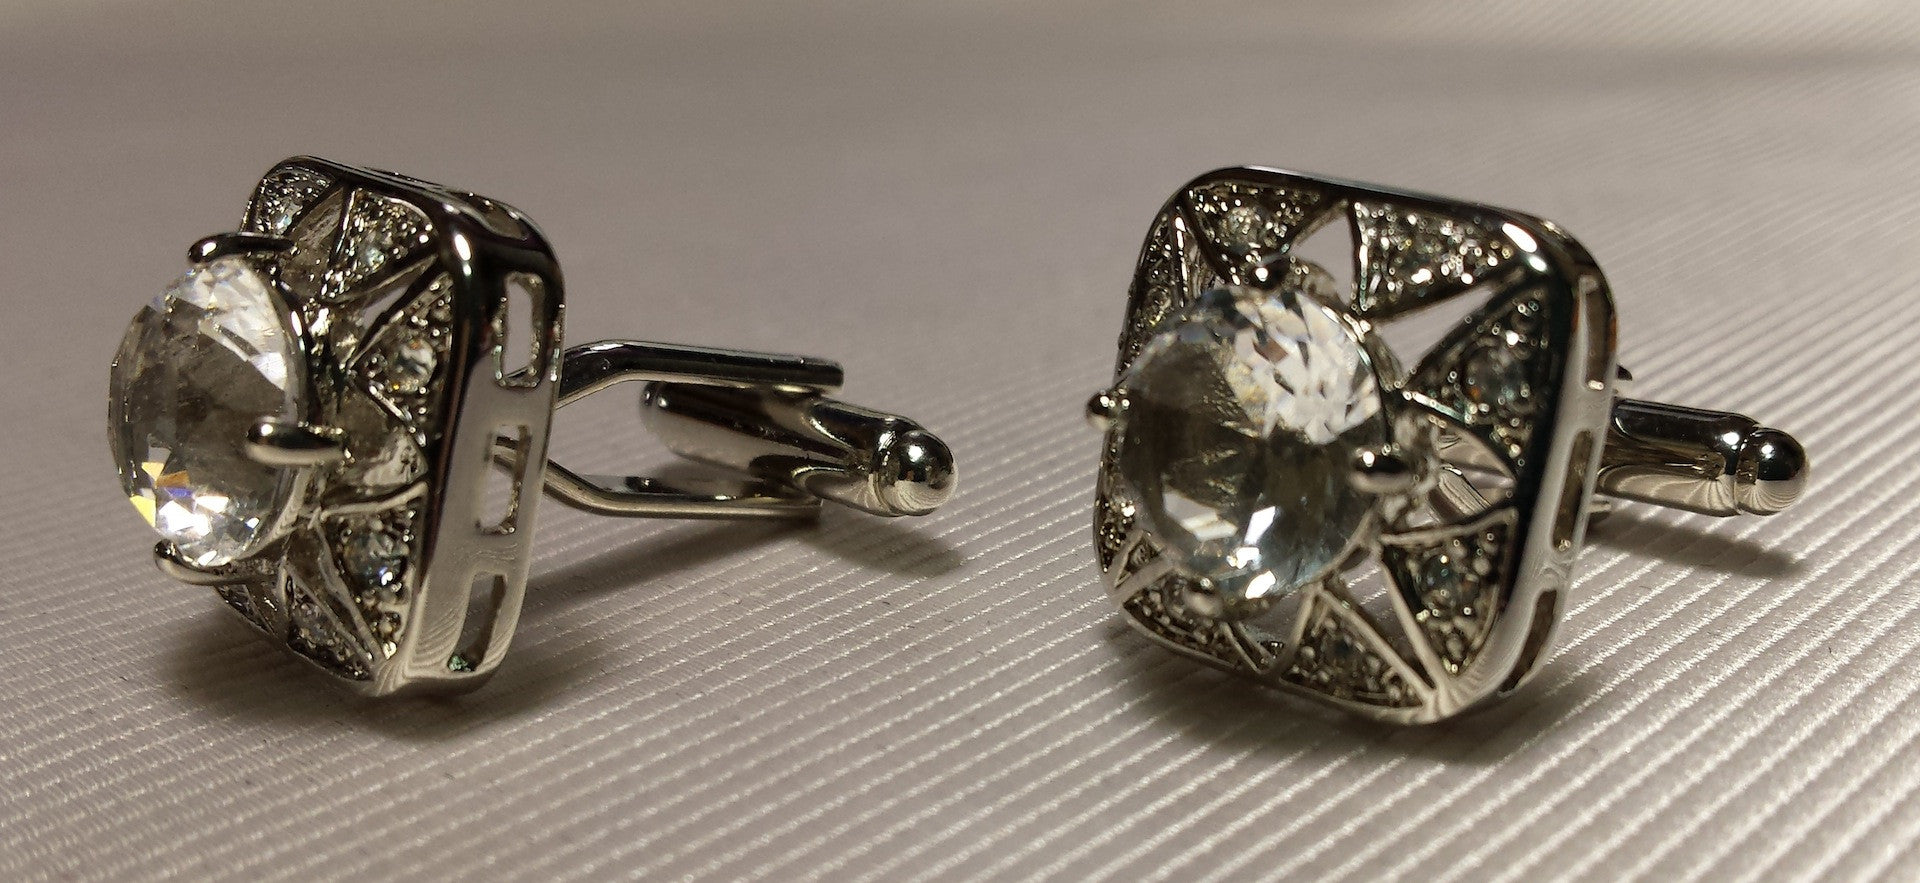 Clear crystal set in silver cufflinks